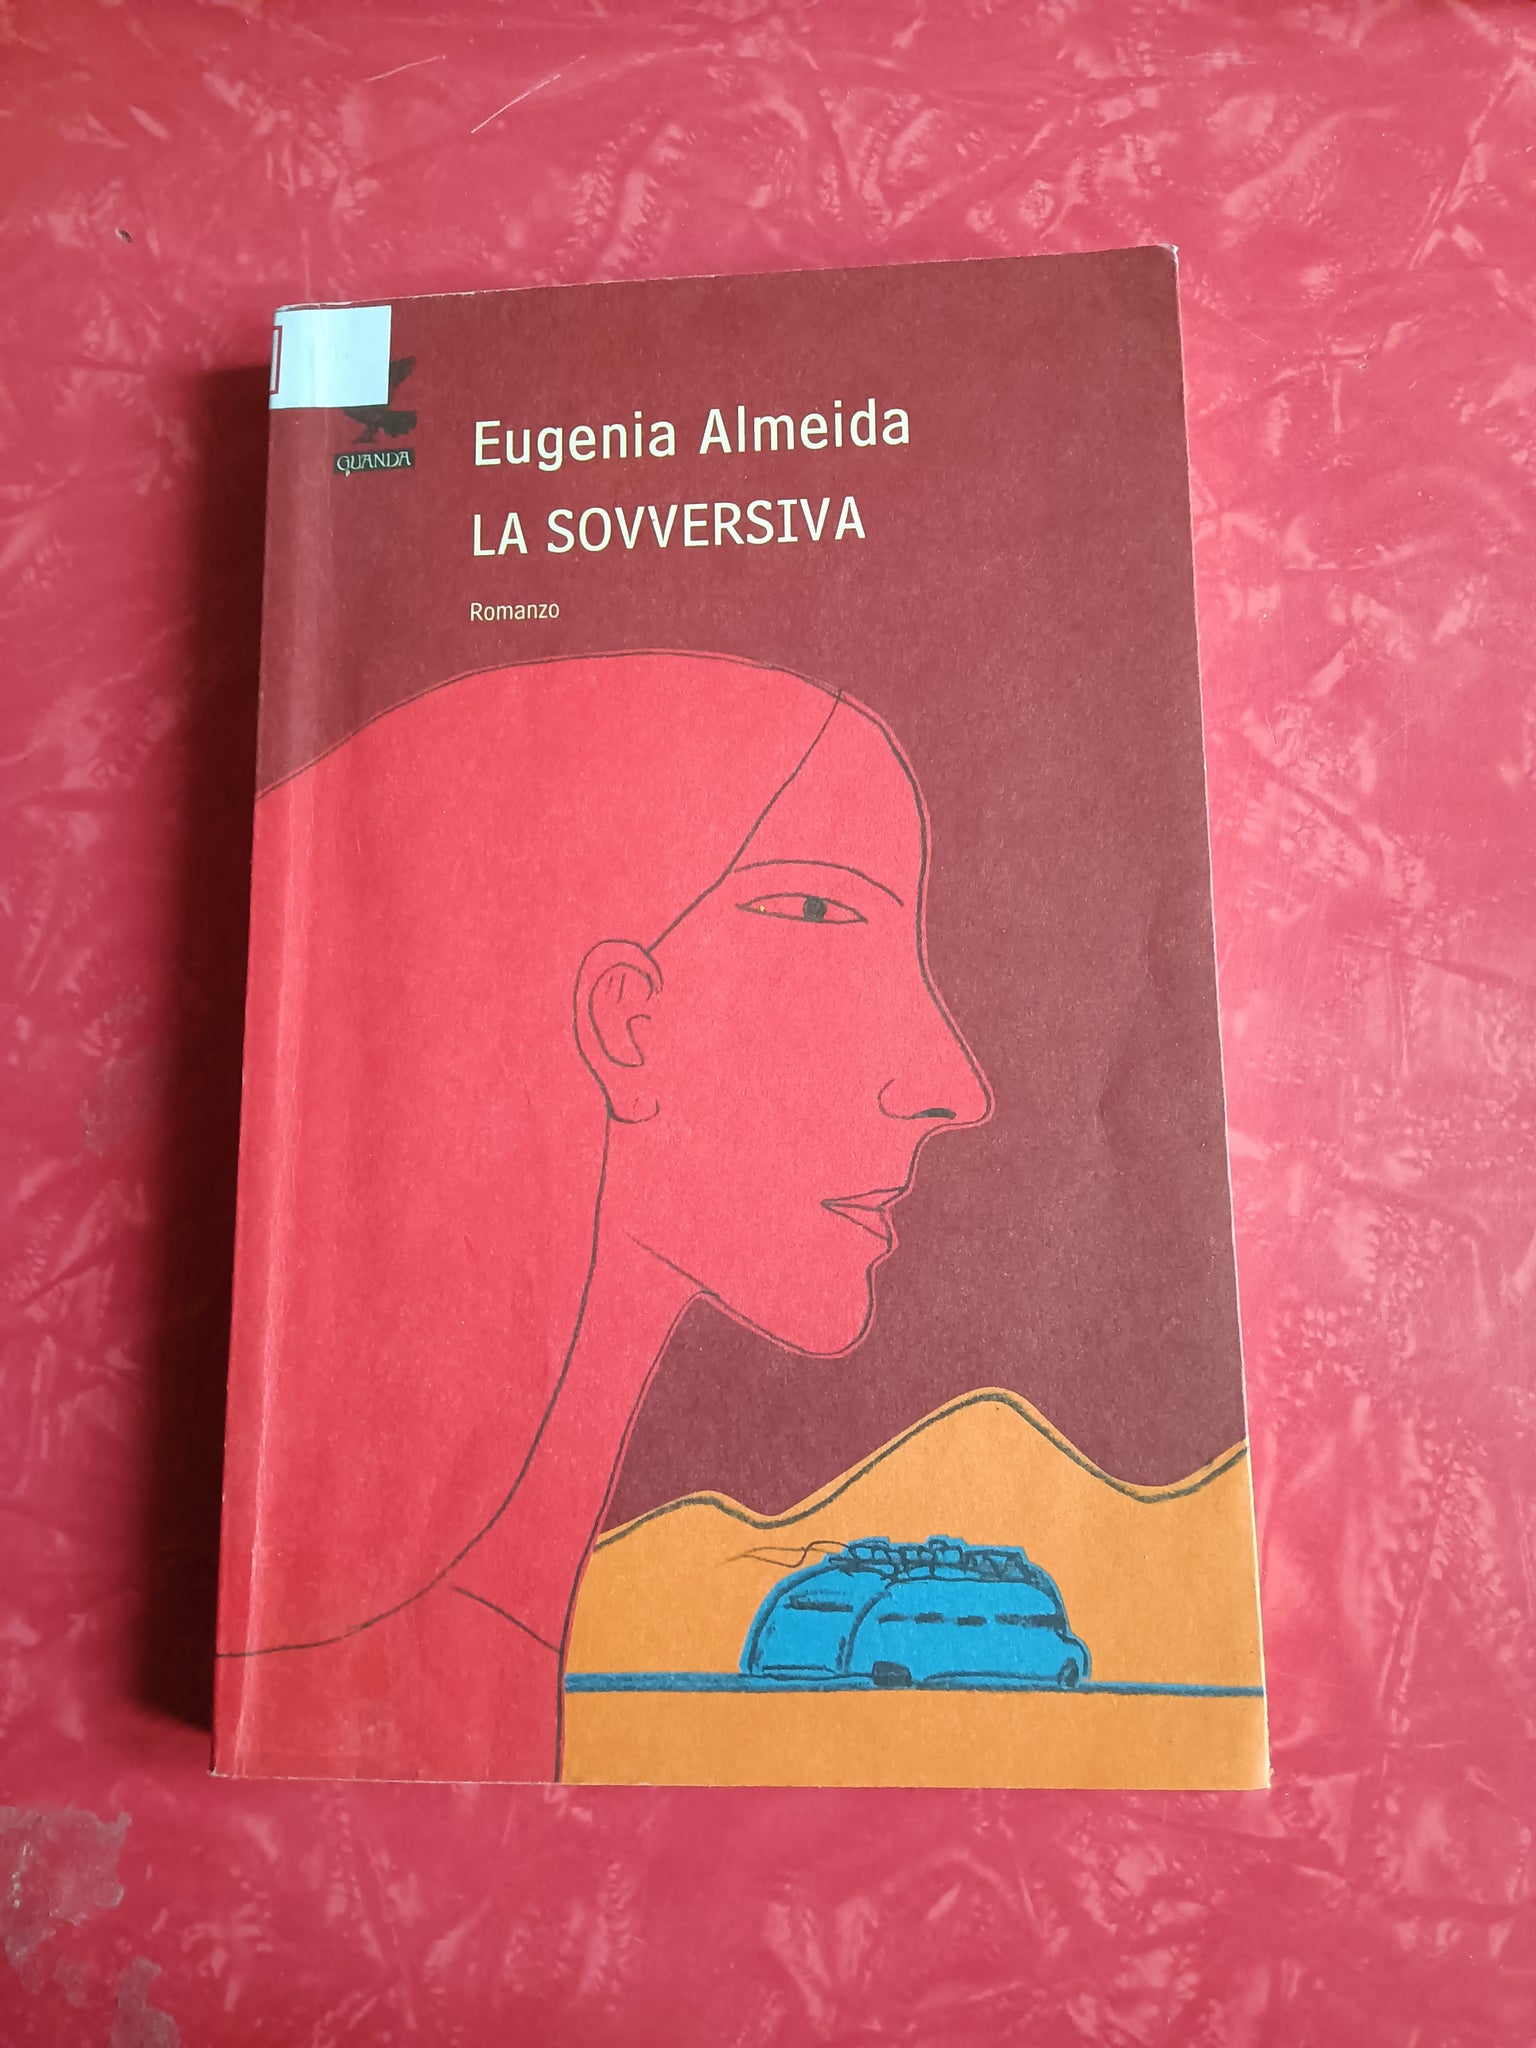 La sovversiva | Eugenia Almeida - Guanda